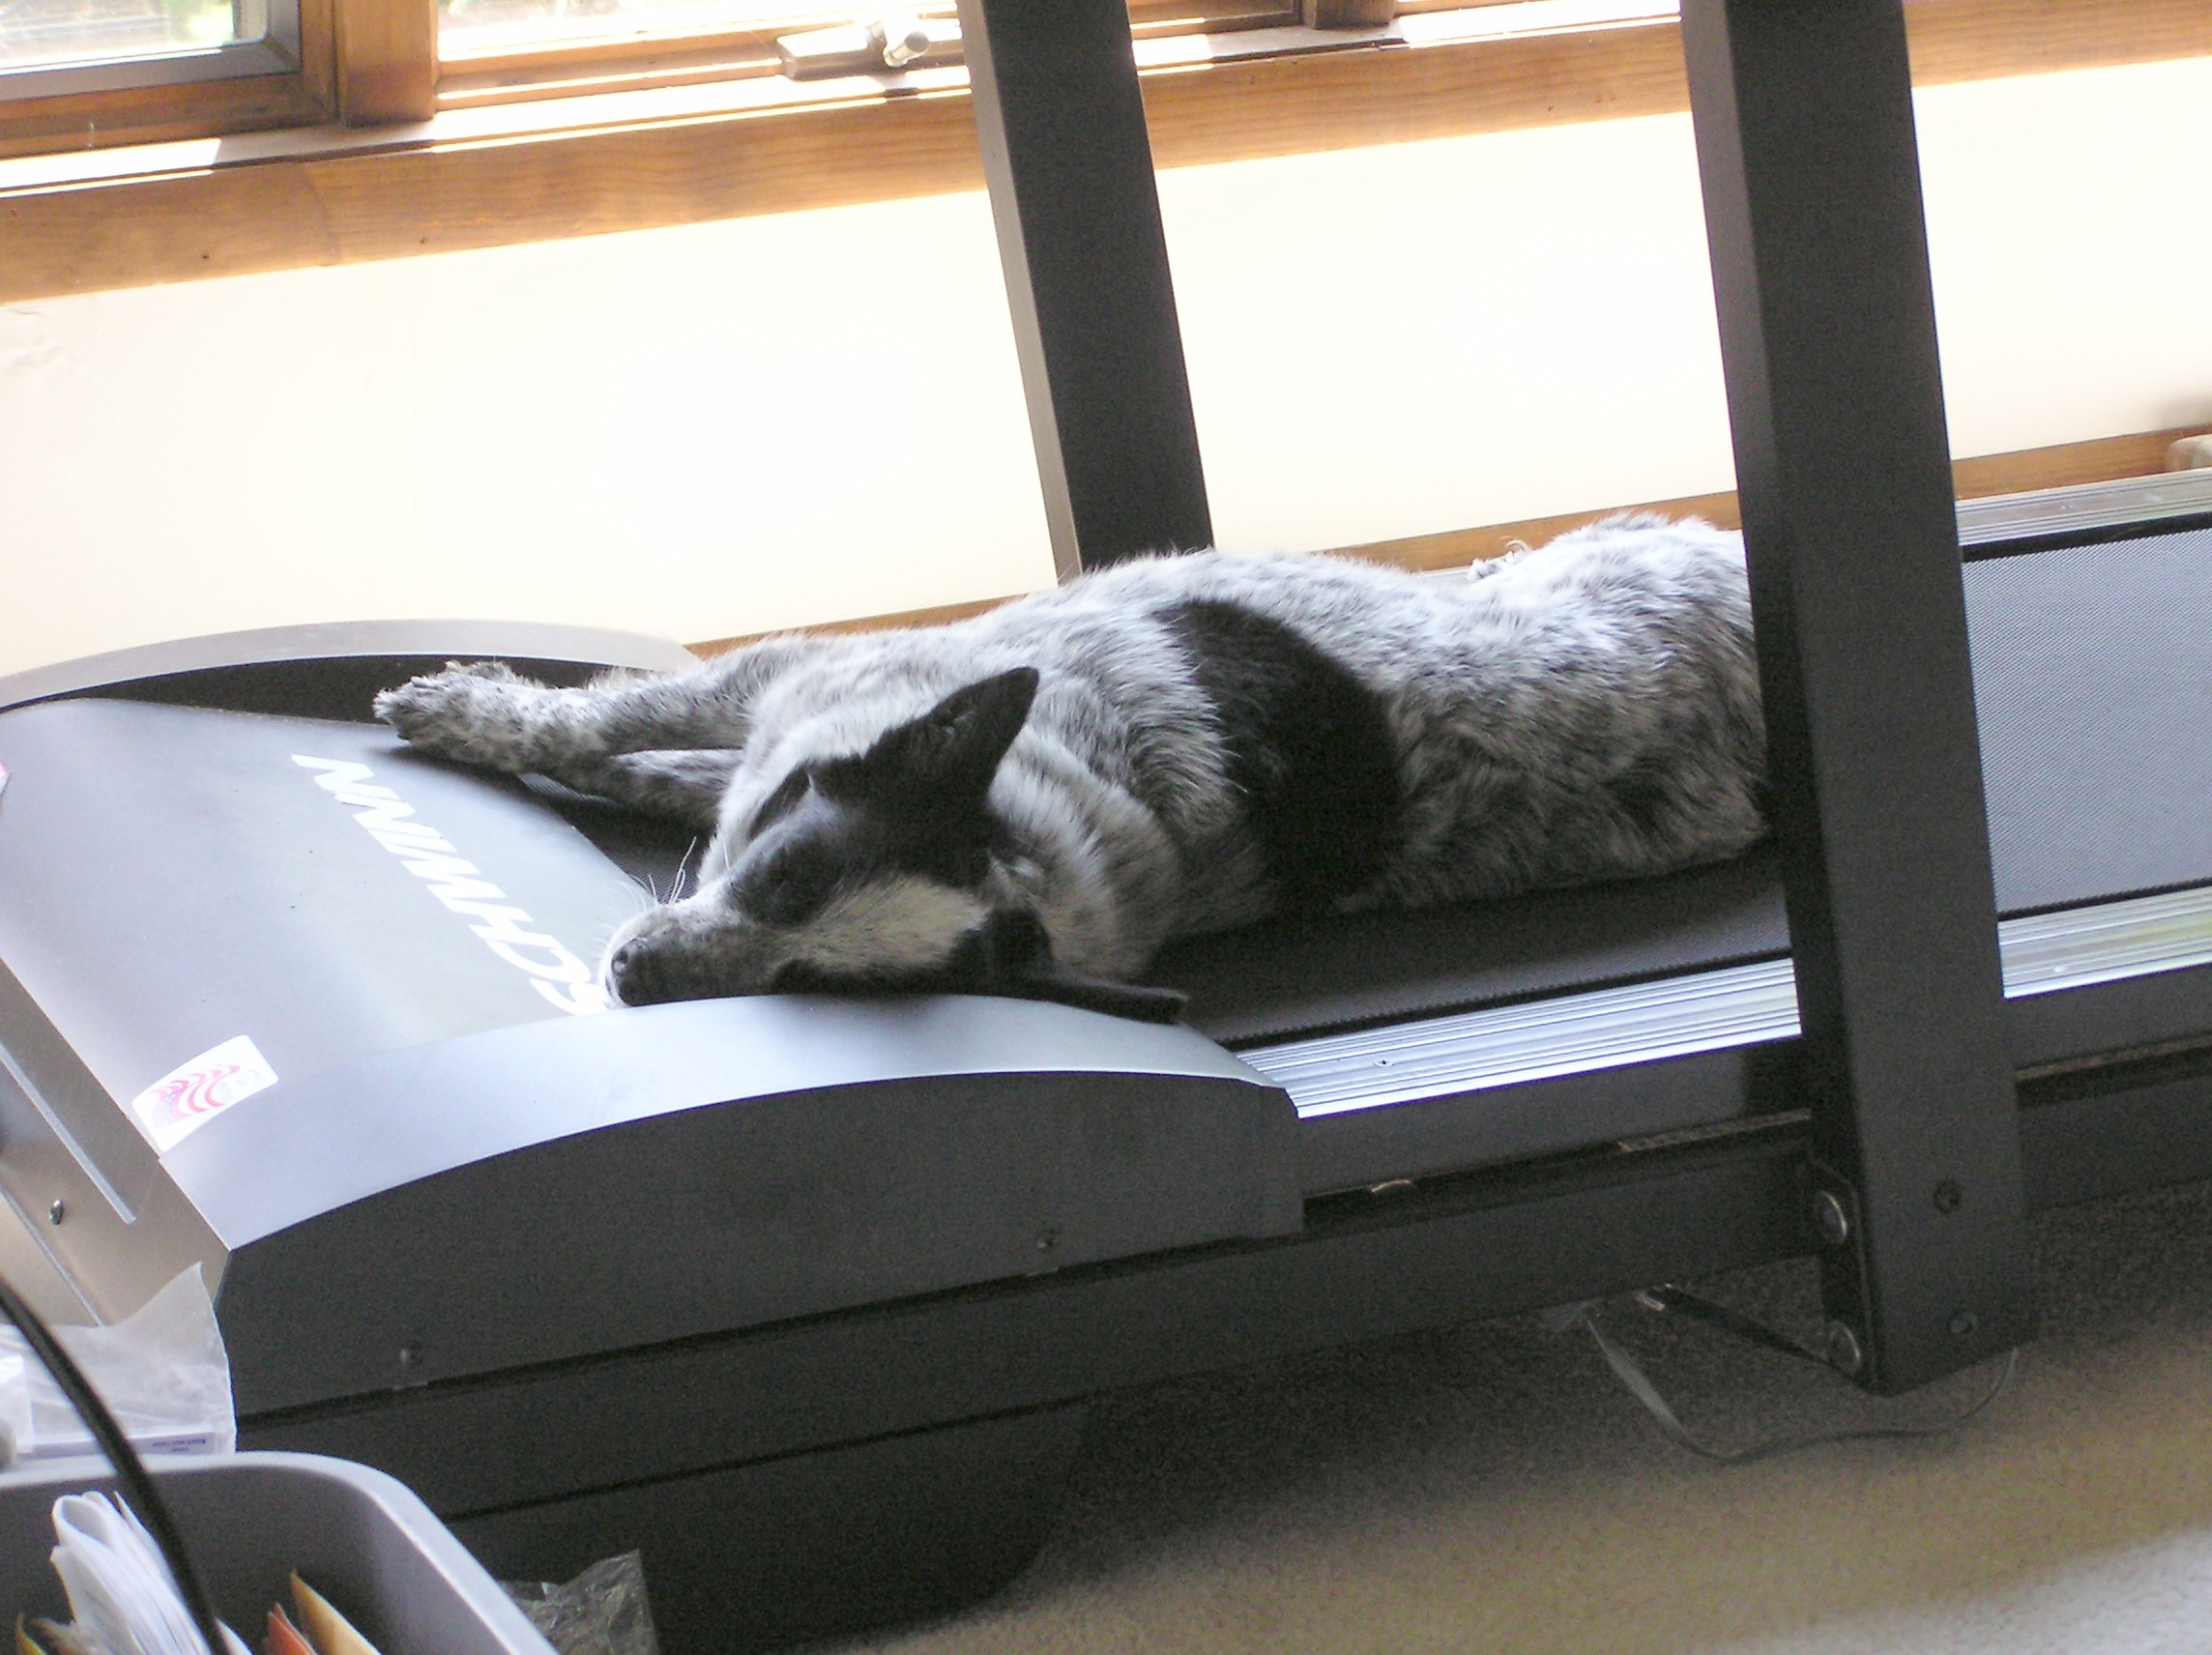 dog on treadmill | Flickr - Photo Sharing!